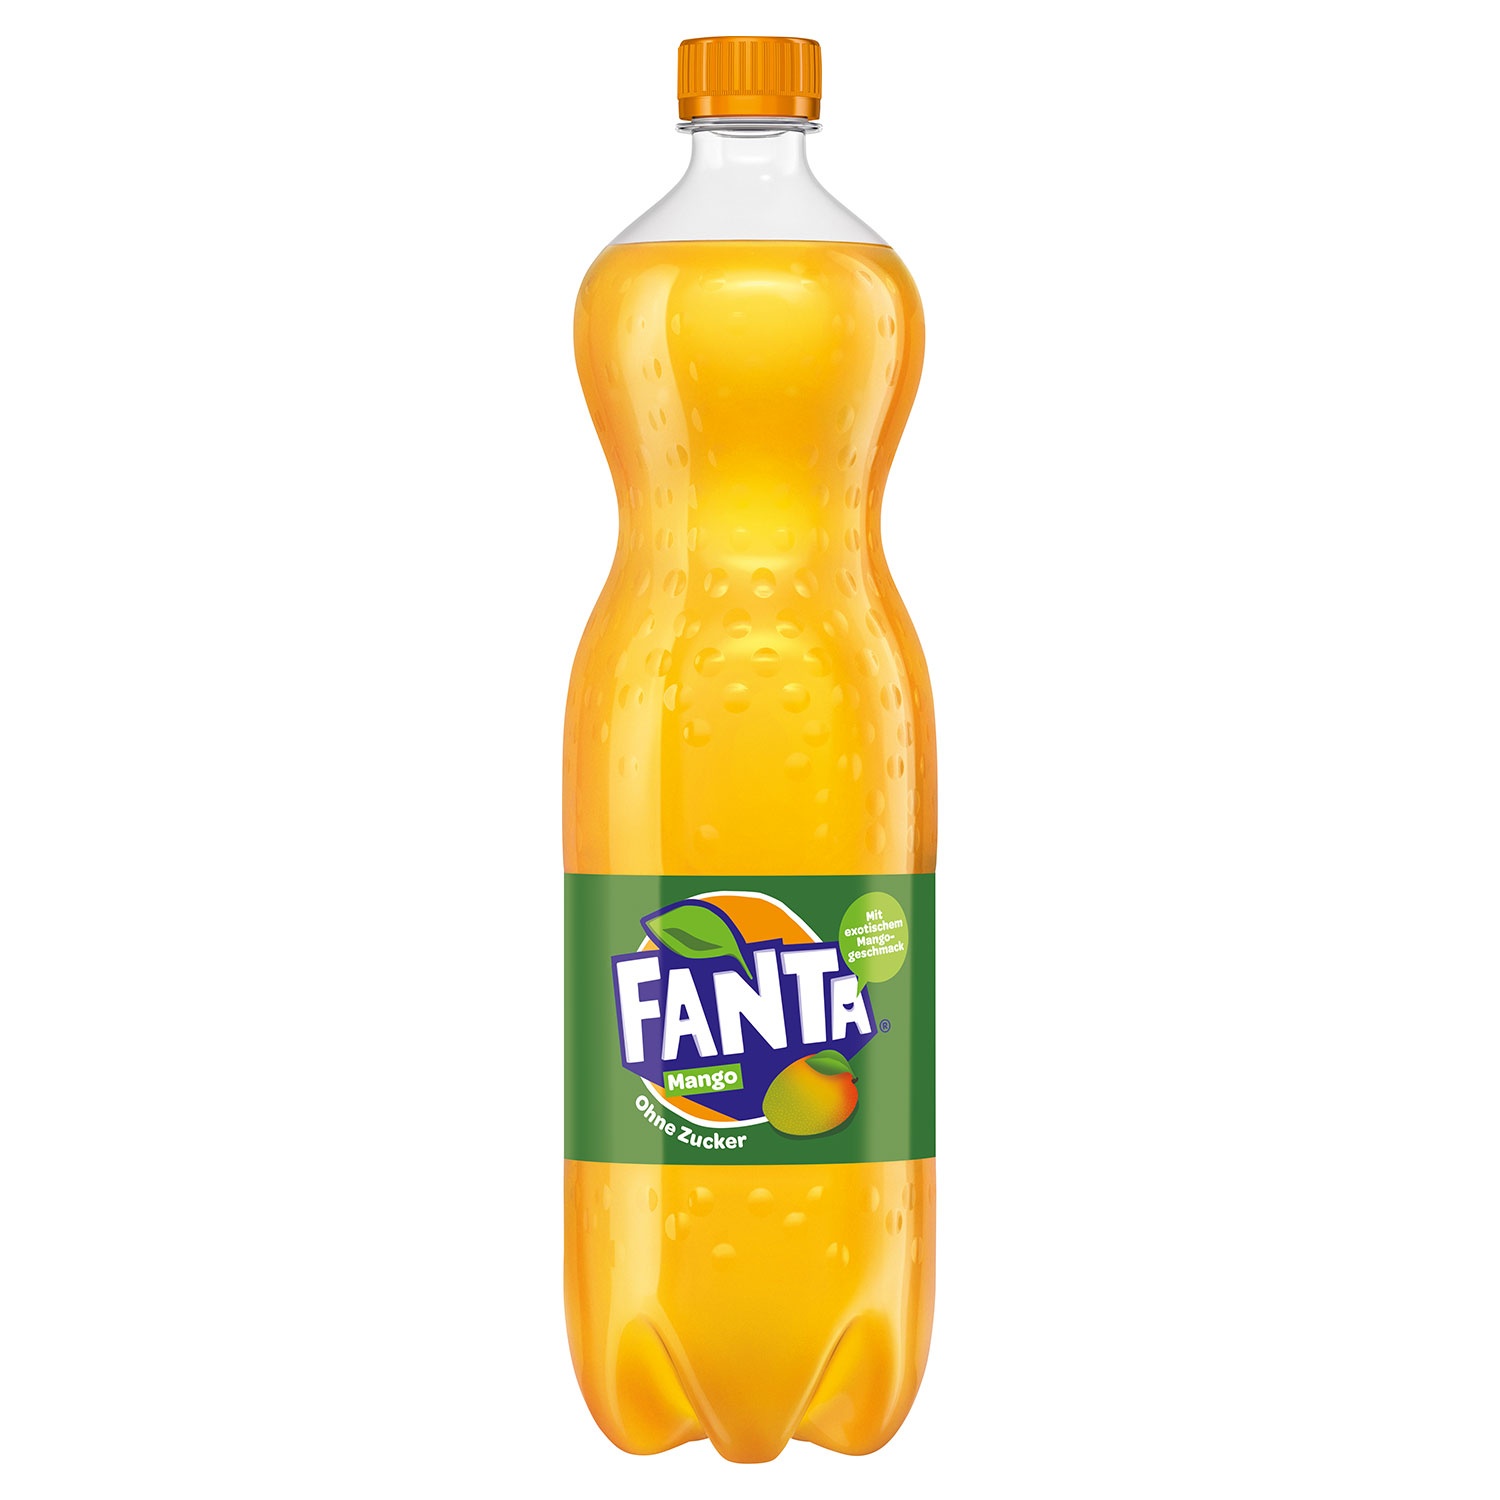 Coca-Cola®/Fanta®/mezzo mix®/Sprite® 1,25 l